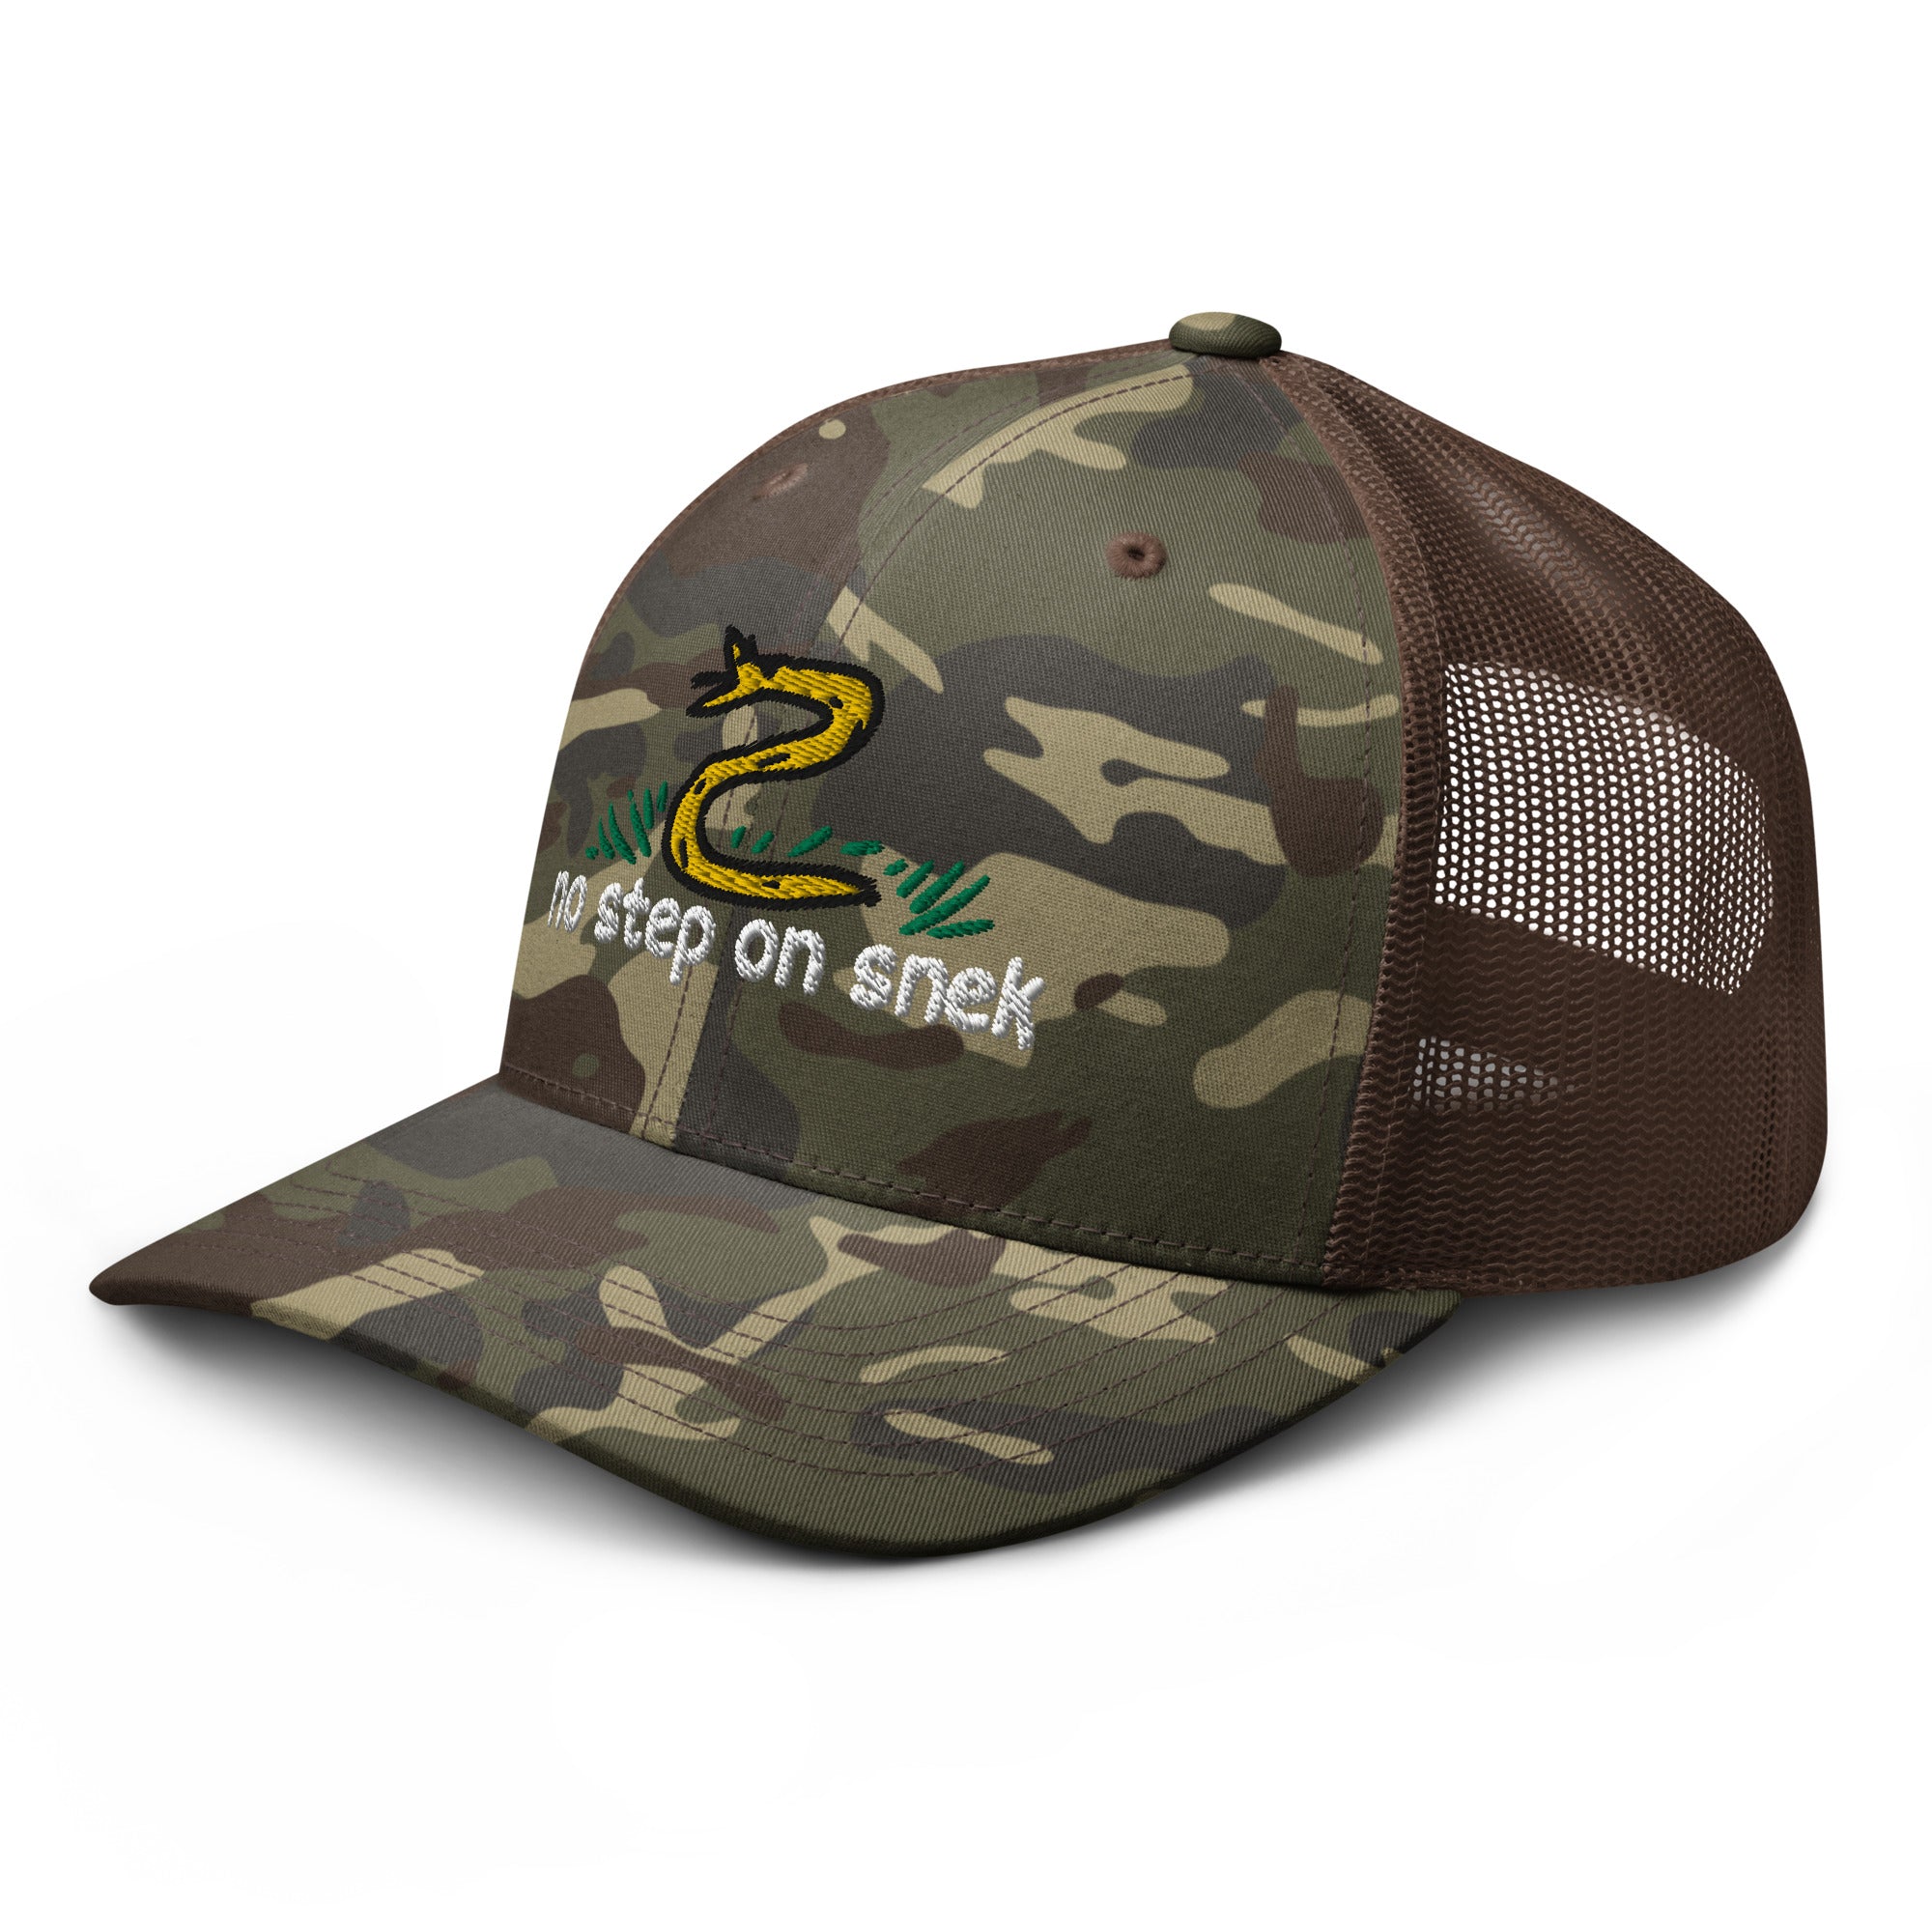 No Step On Snek Camouflage Trucker Hat